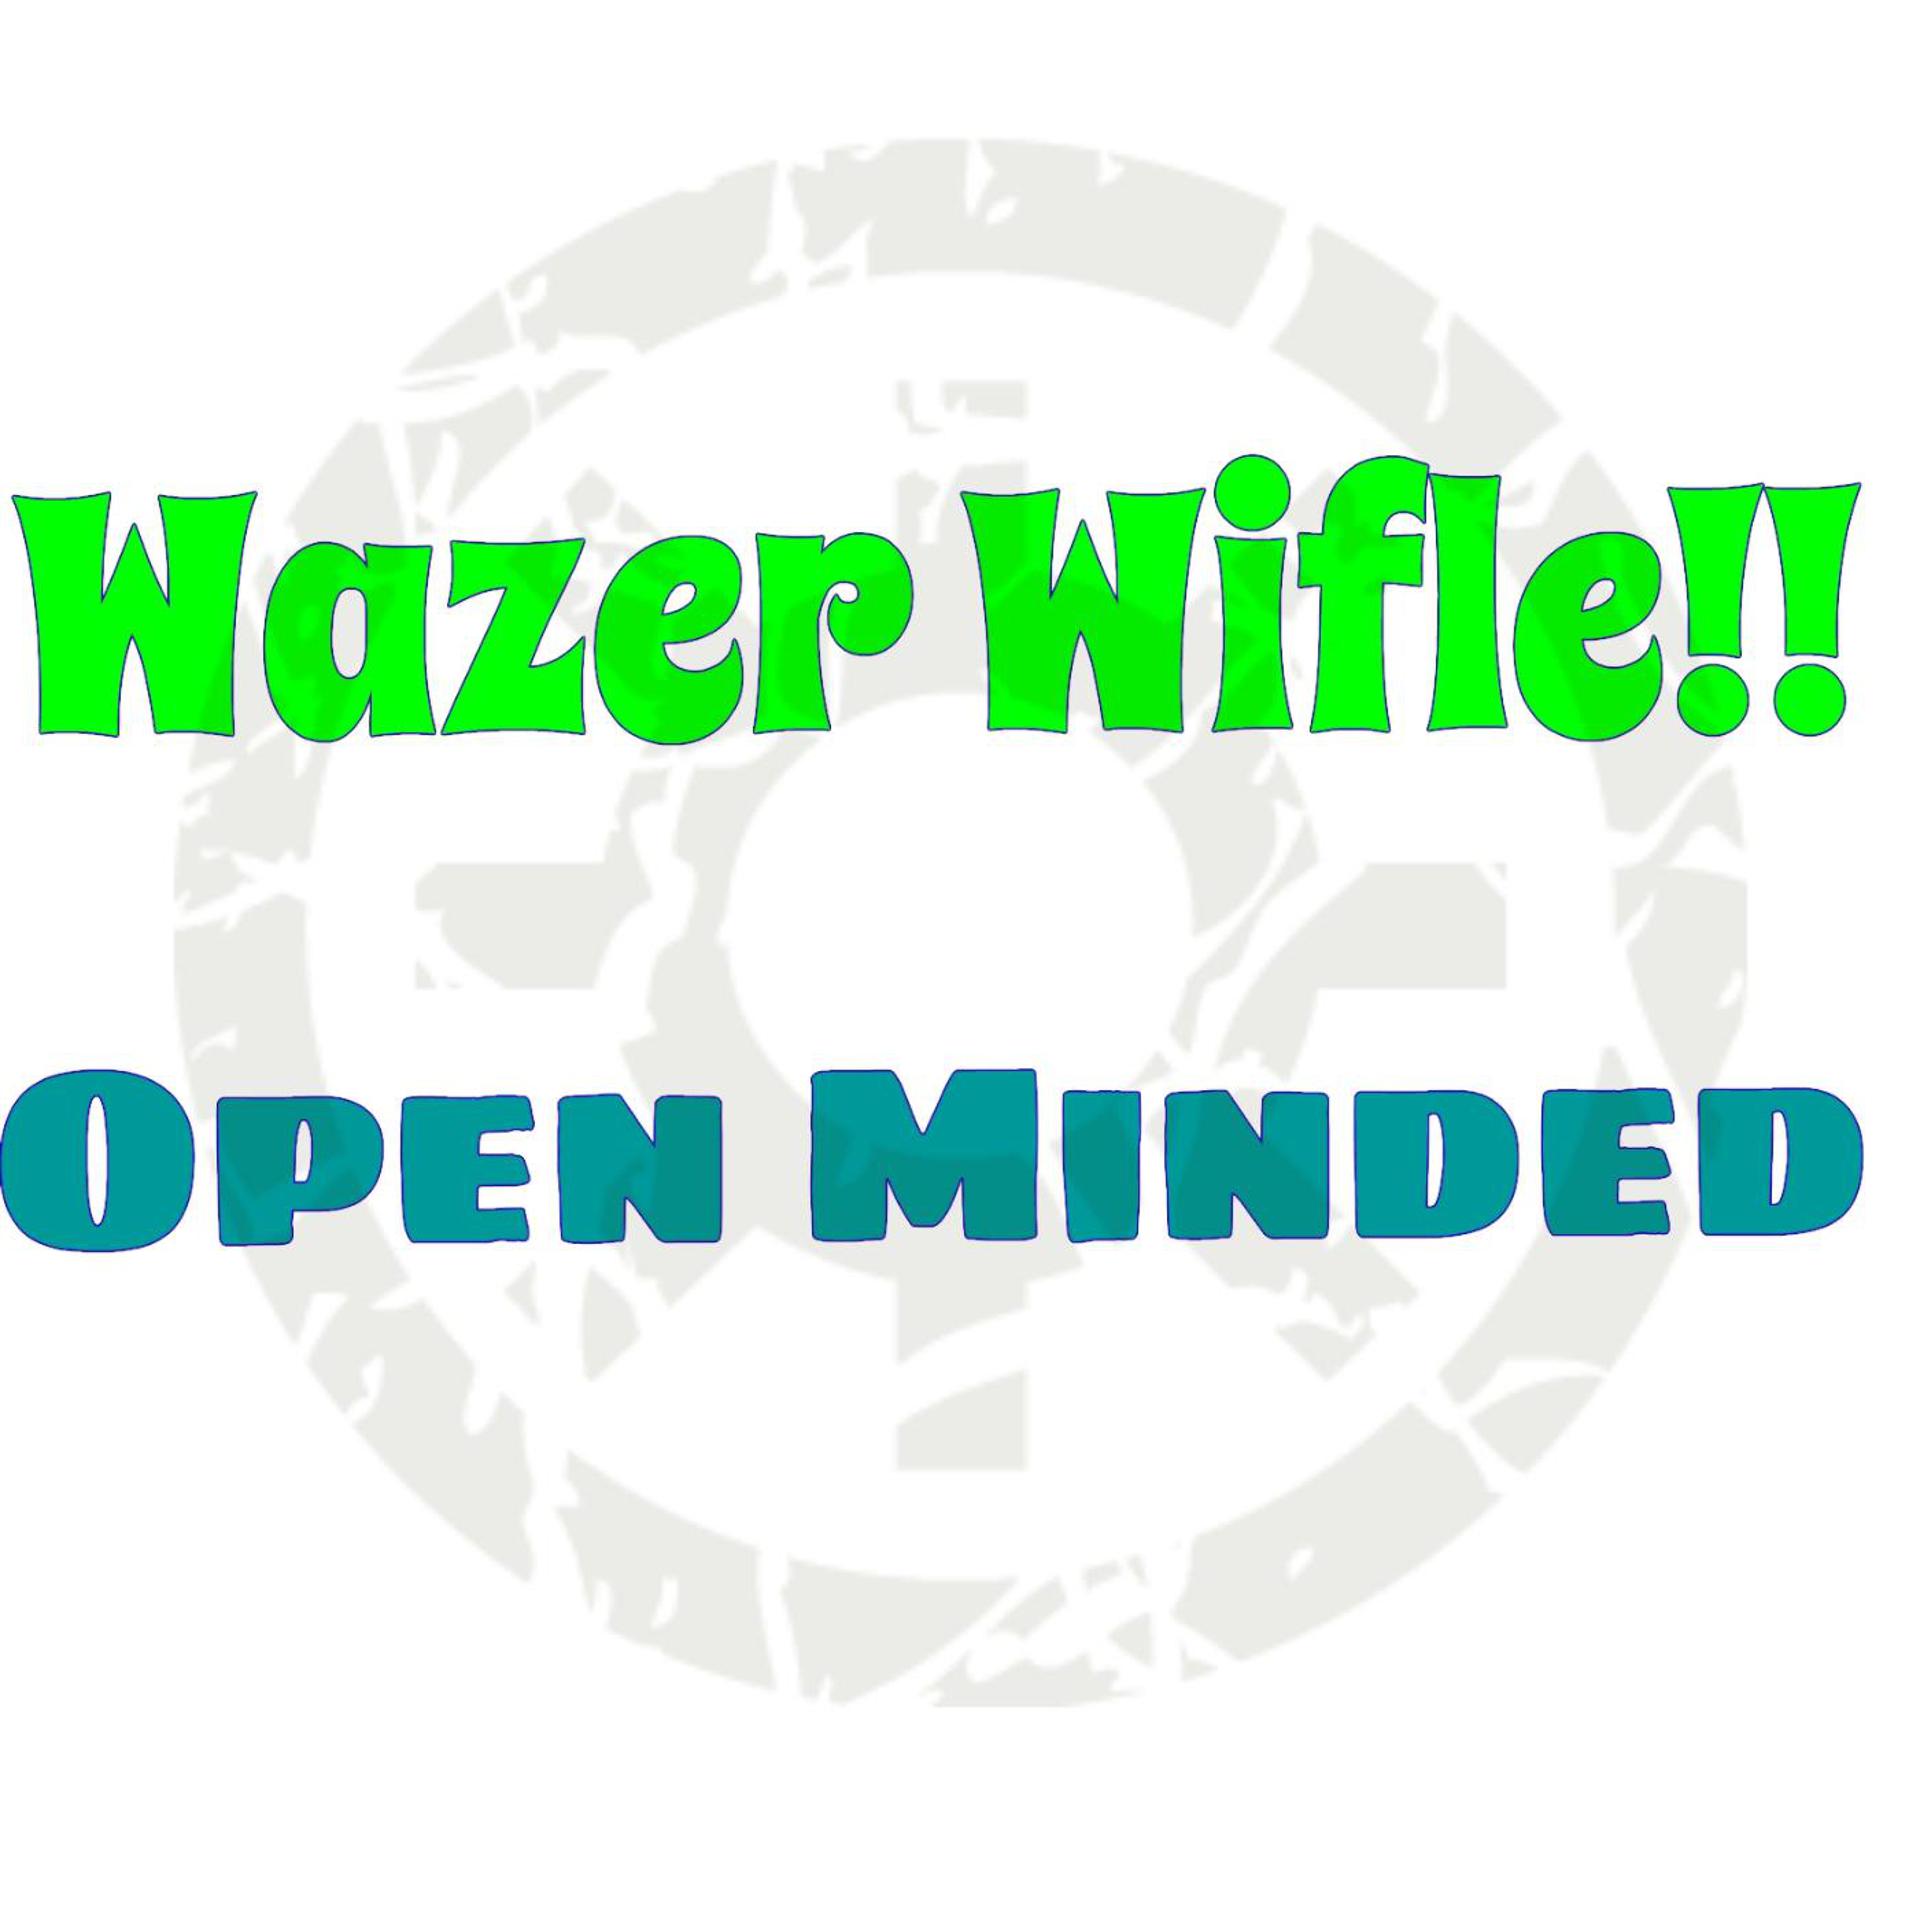 Single open. Open minded. Wifle. Wazer Wifle с прицелом чит. Wazer logo.